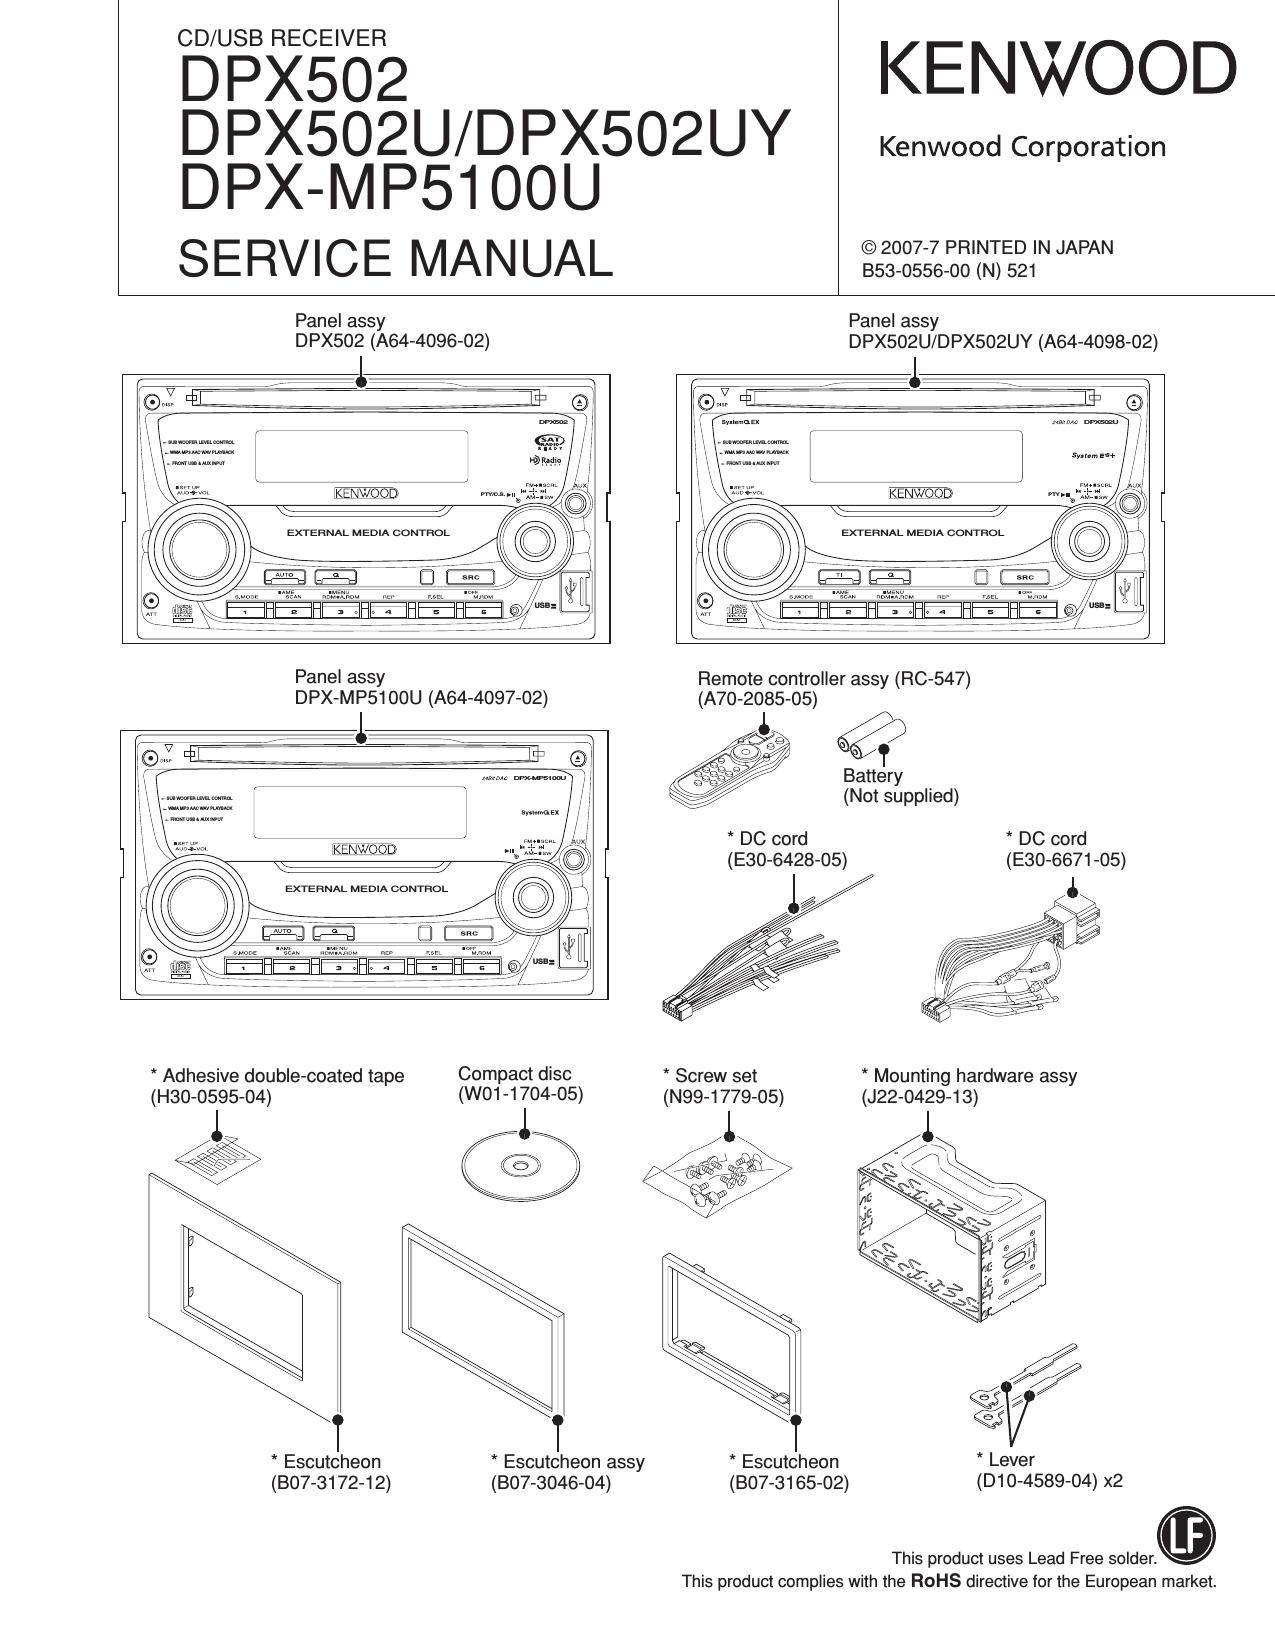 Free Download Kenwood Dpx 502 U Service Manual